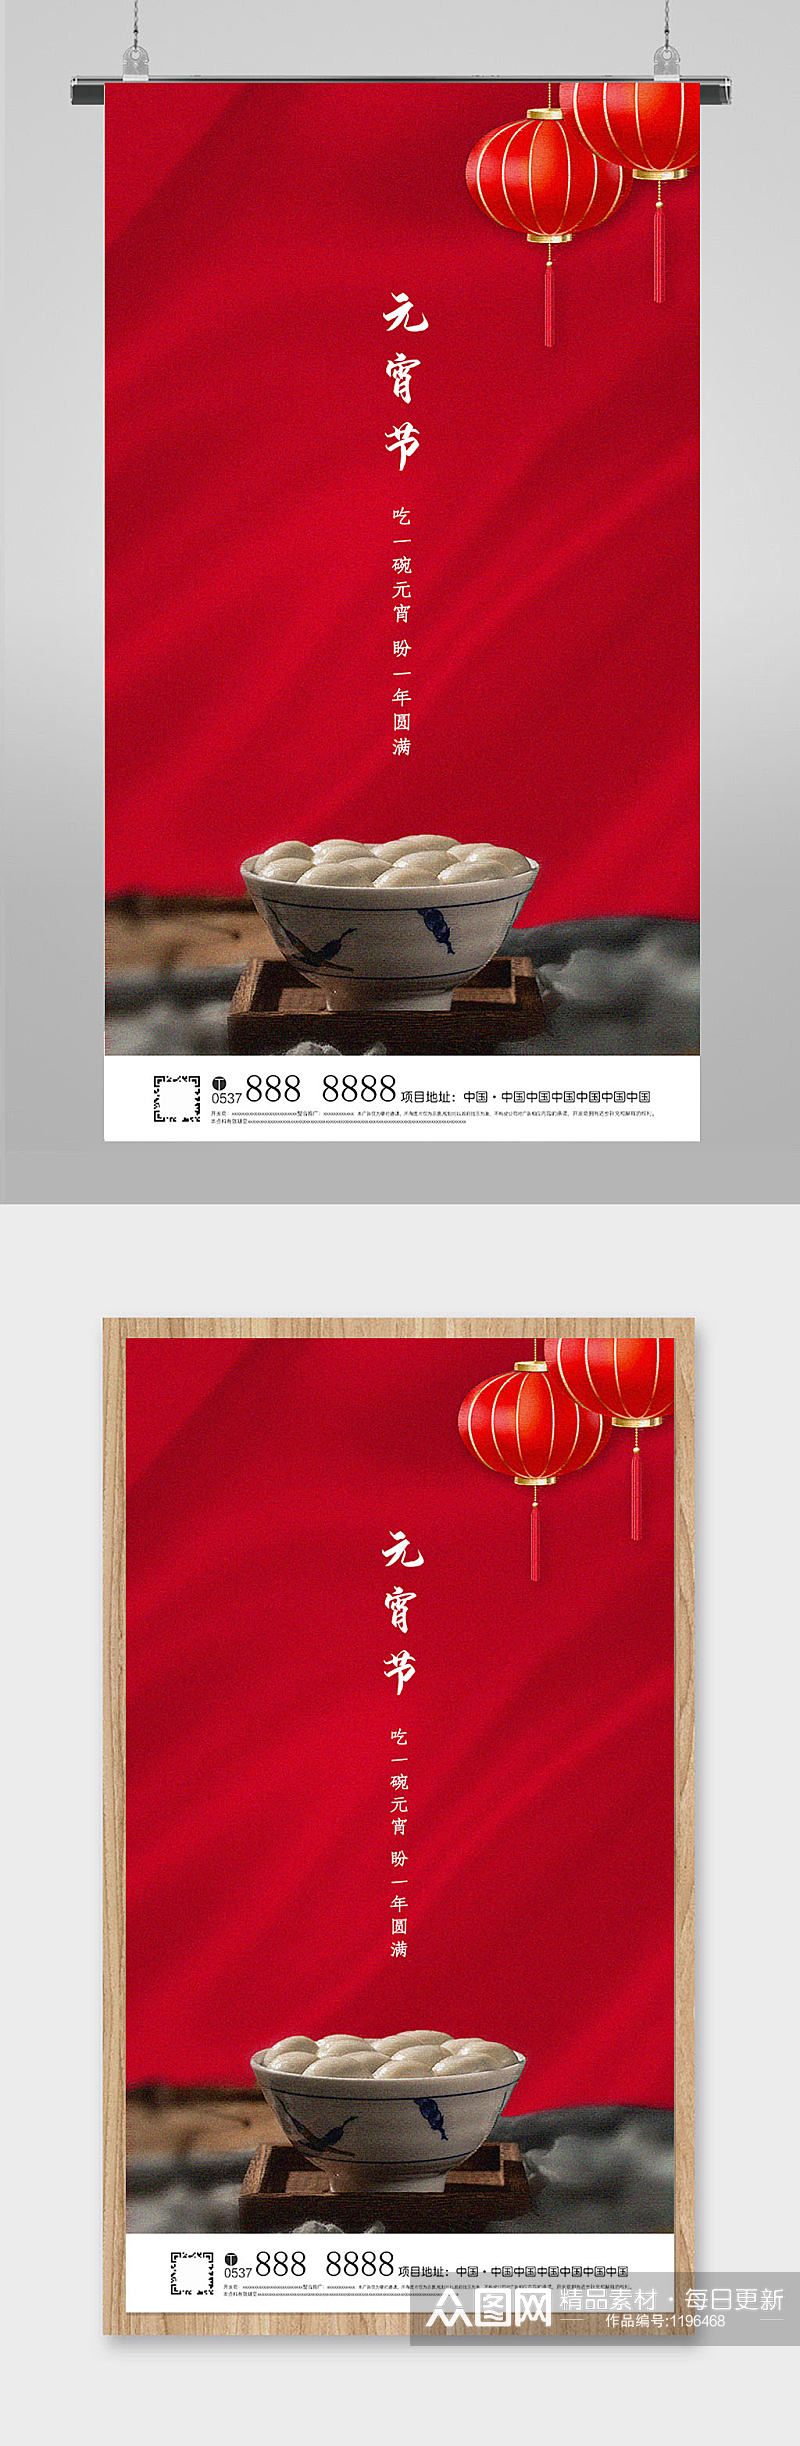 元宵节传统节日地产热点朋友圈刷屏海报素材